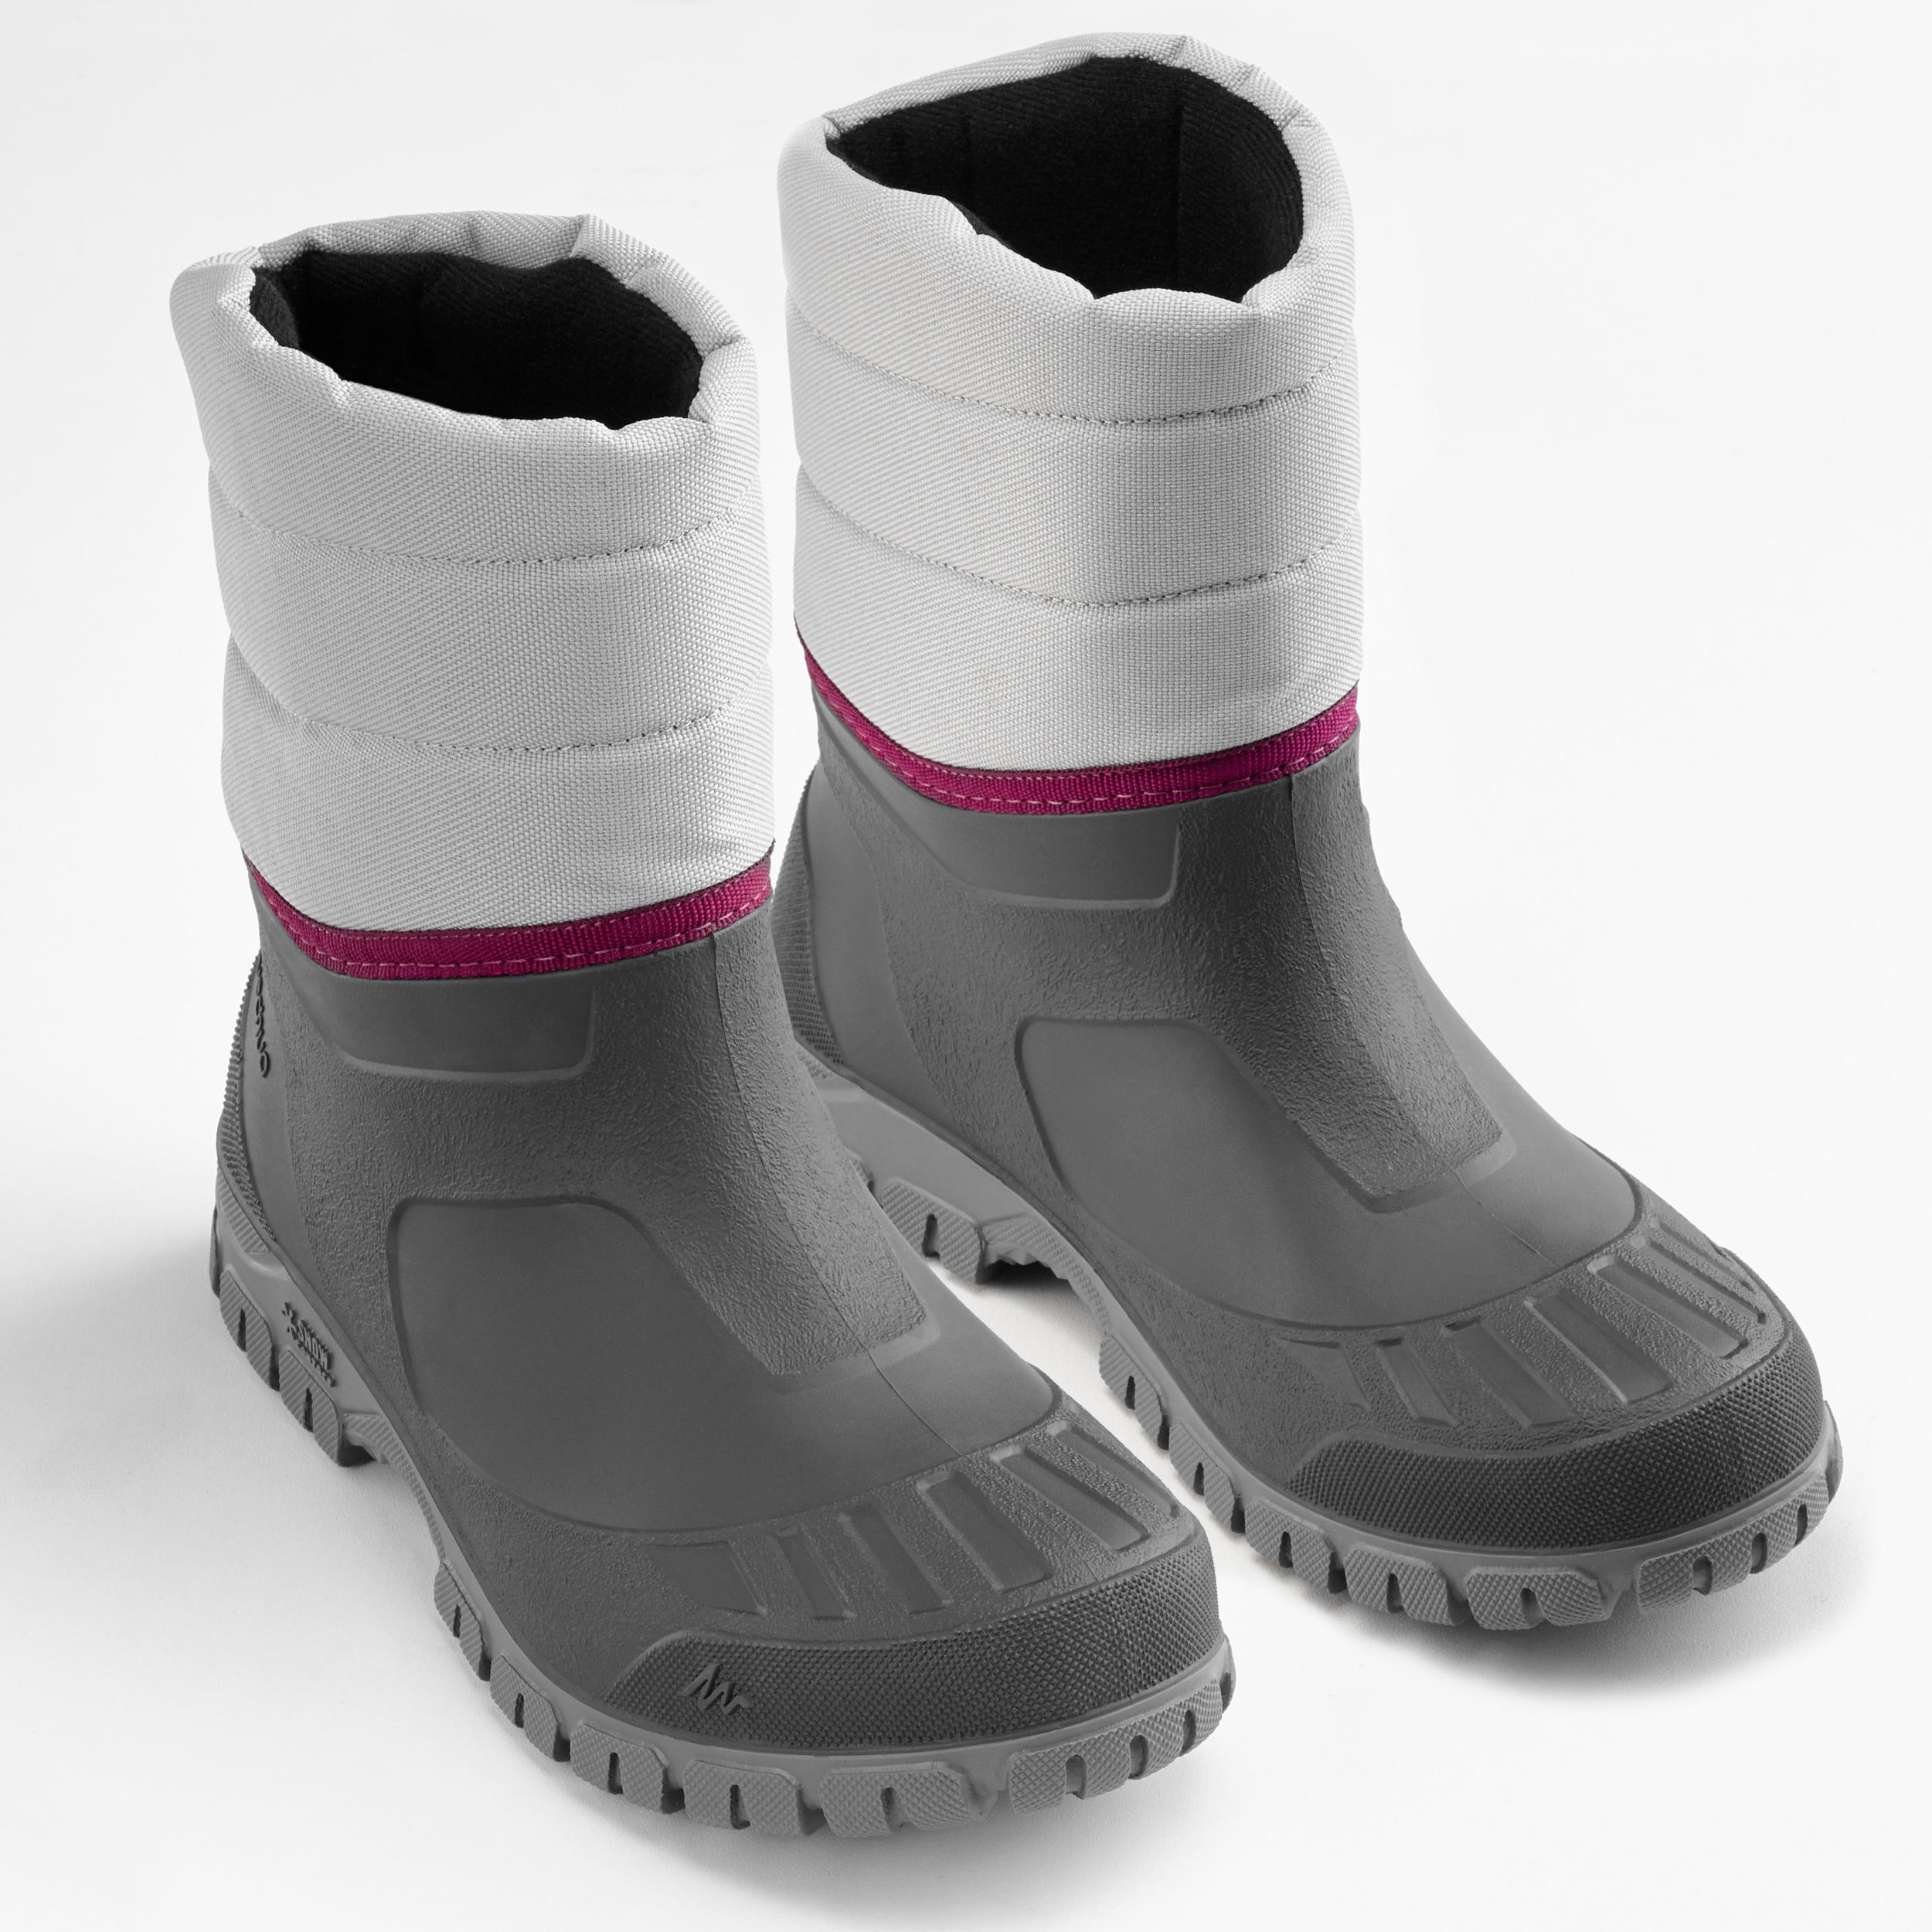 Women's Winter Hiking Boot - SH 100 Warm Grey - QUECHUA